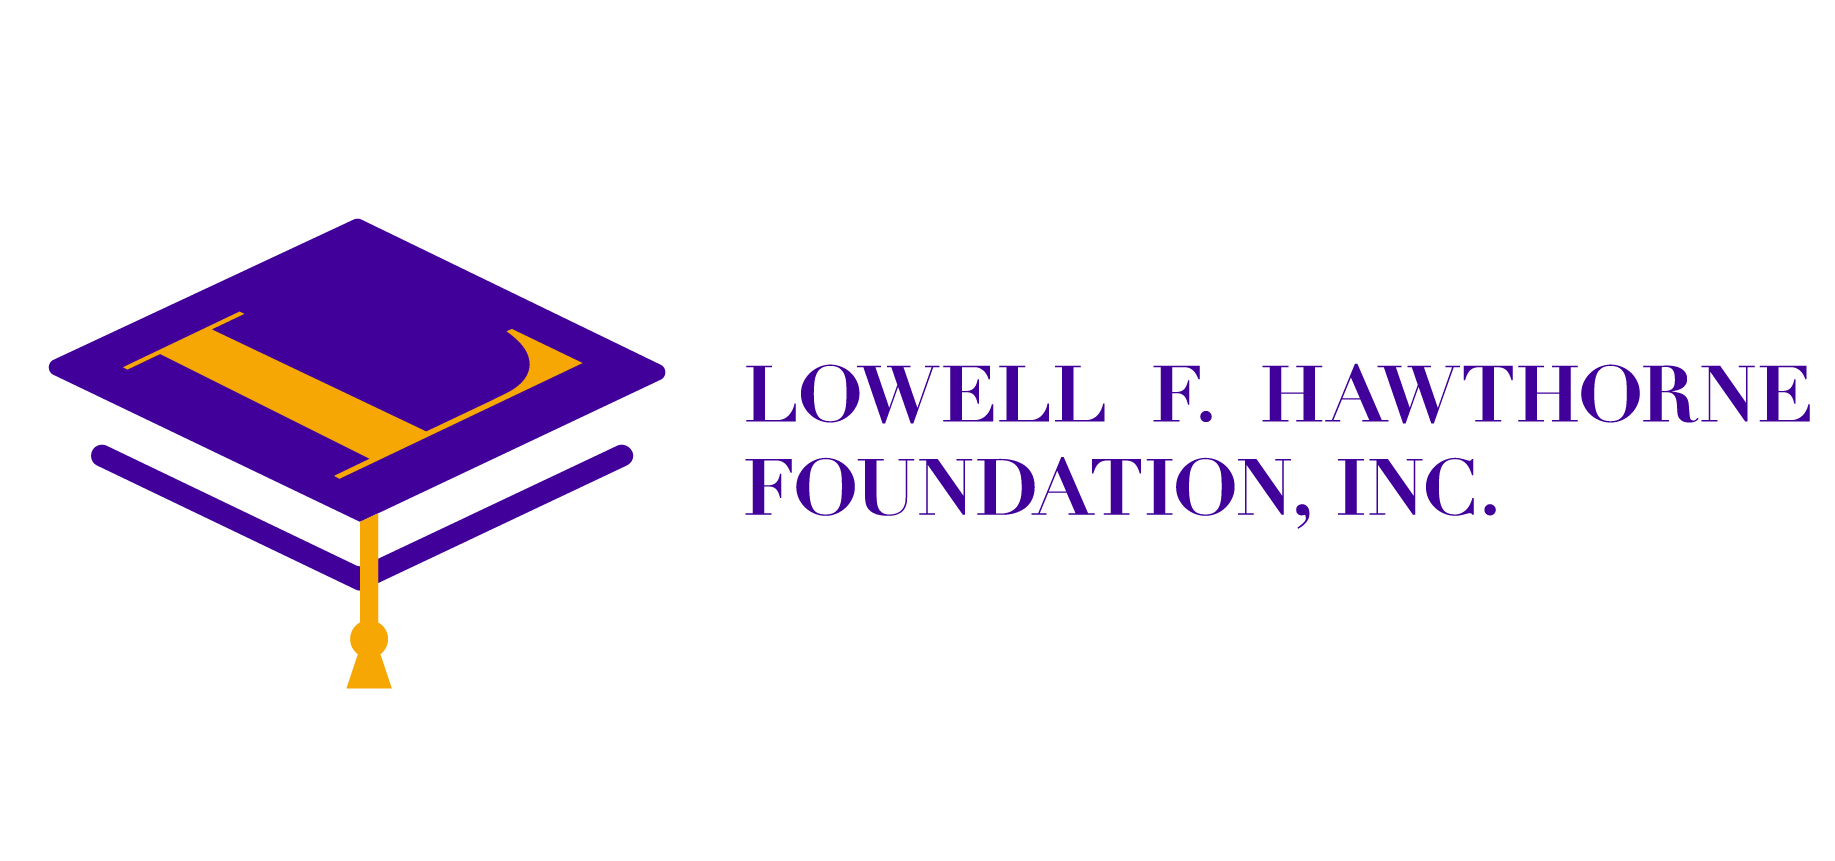 Lowell F. Hawthorne Foundation